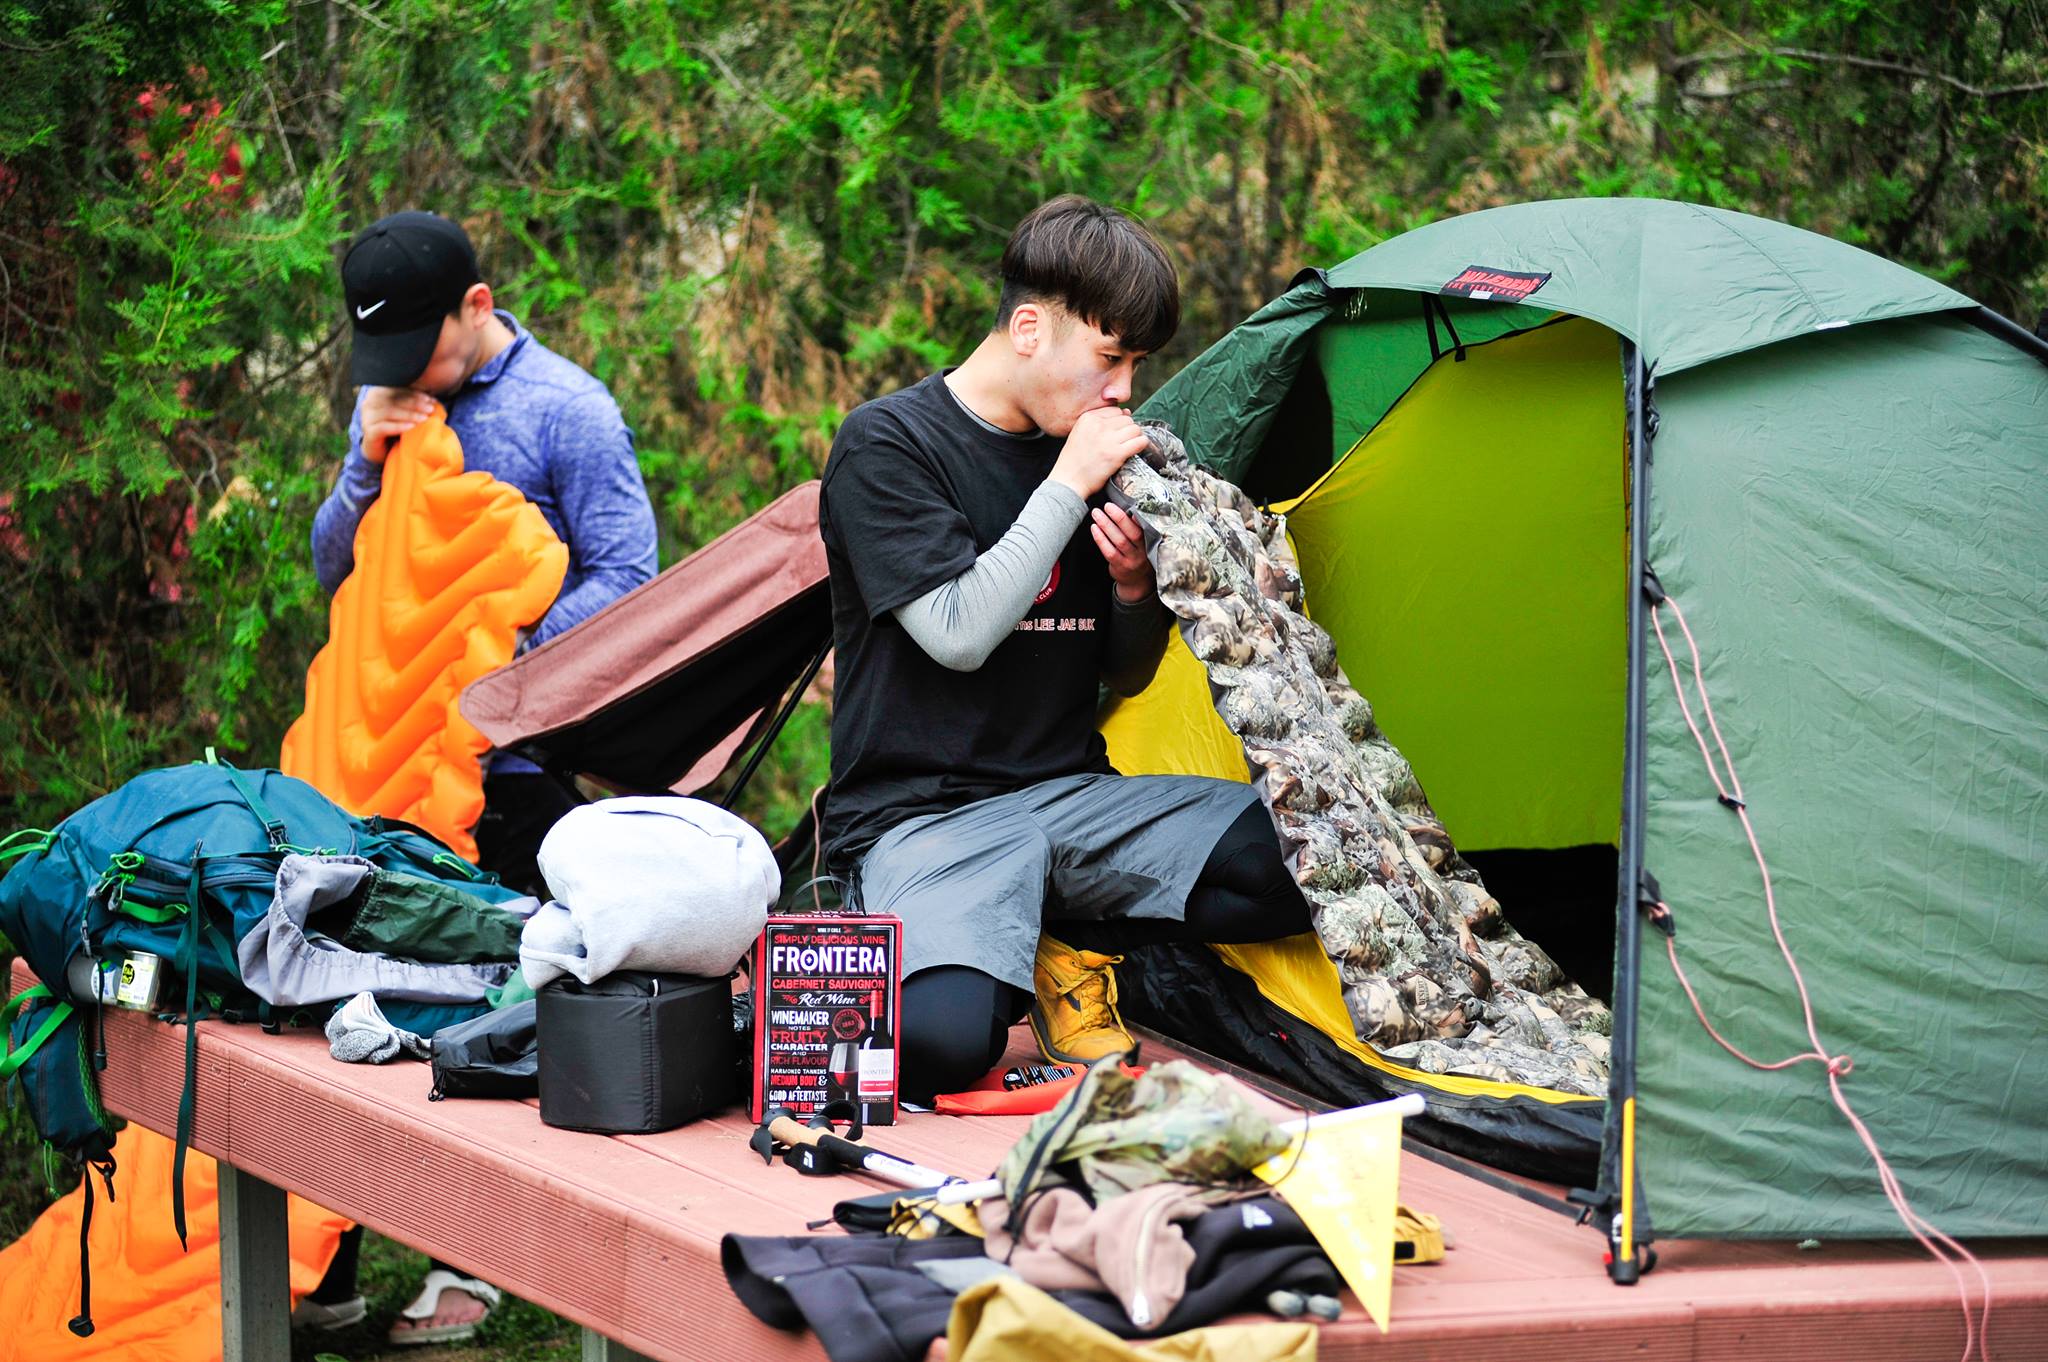 Cắm trại ở Hàn Quốc - Những điều cần biết